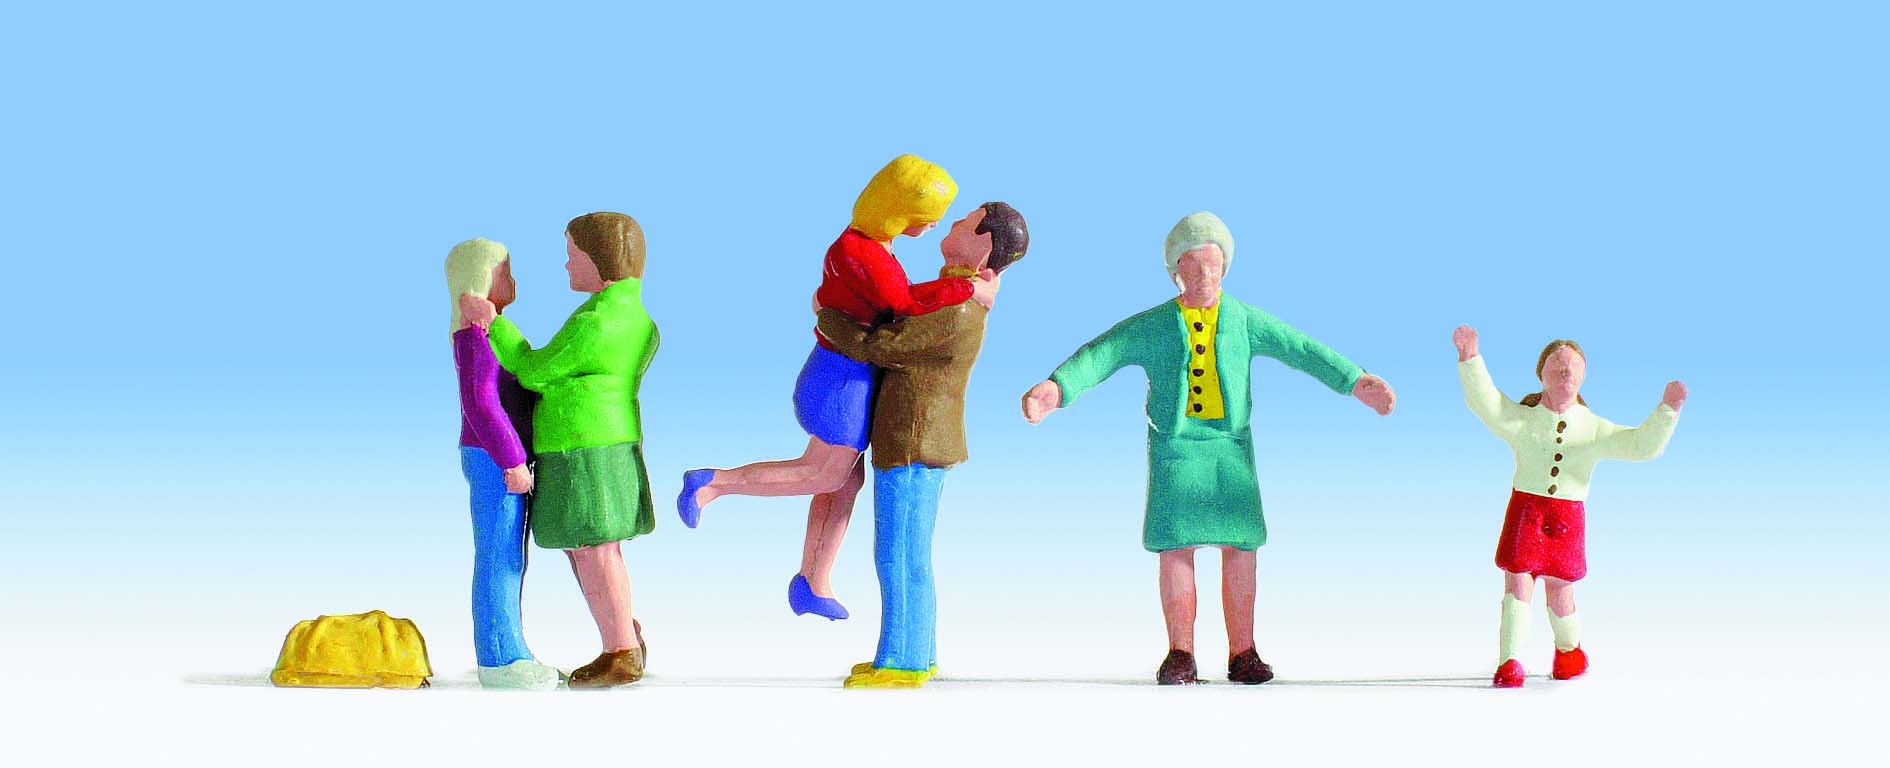 Retrouvailles‚ 6 figurines idéales pour quai de gare ou arrêt de bus